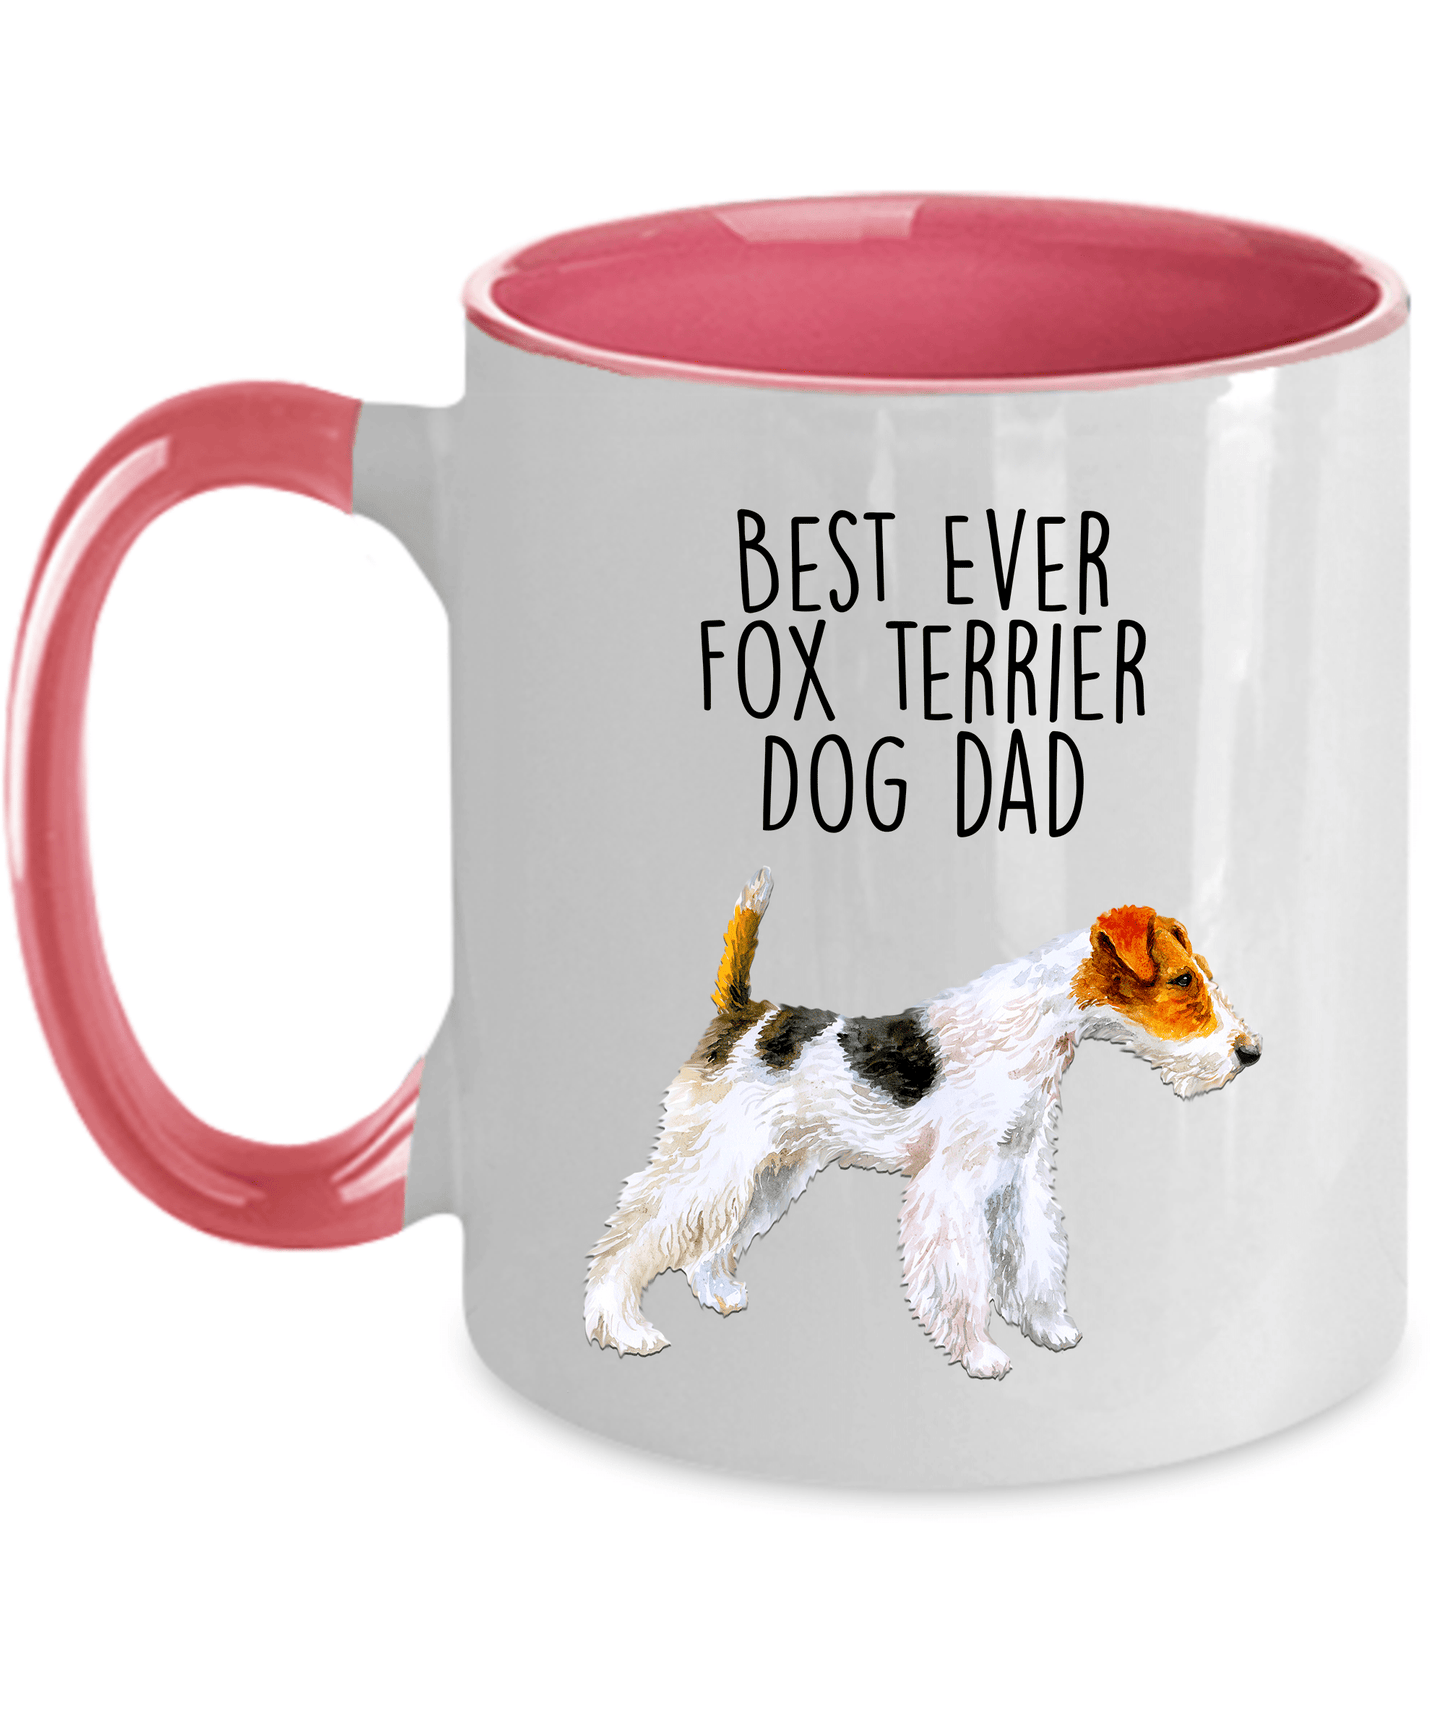 Best Ever Fox Terrier Dog Dad Custom Ceramic Coffee Mug